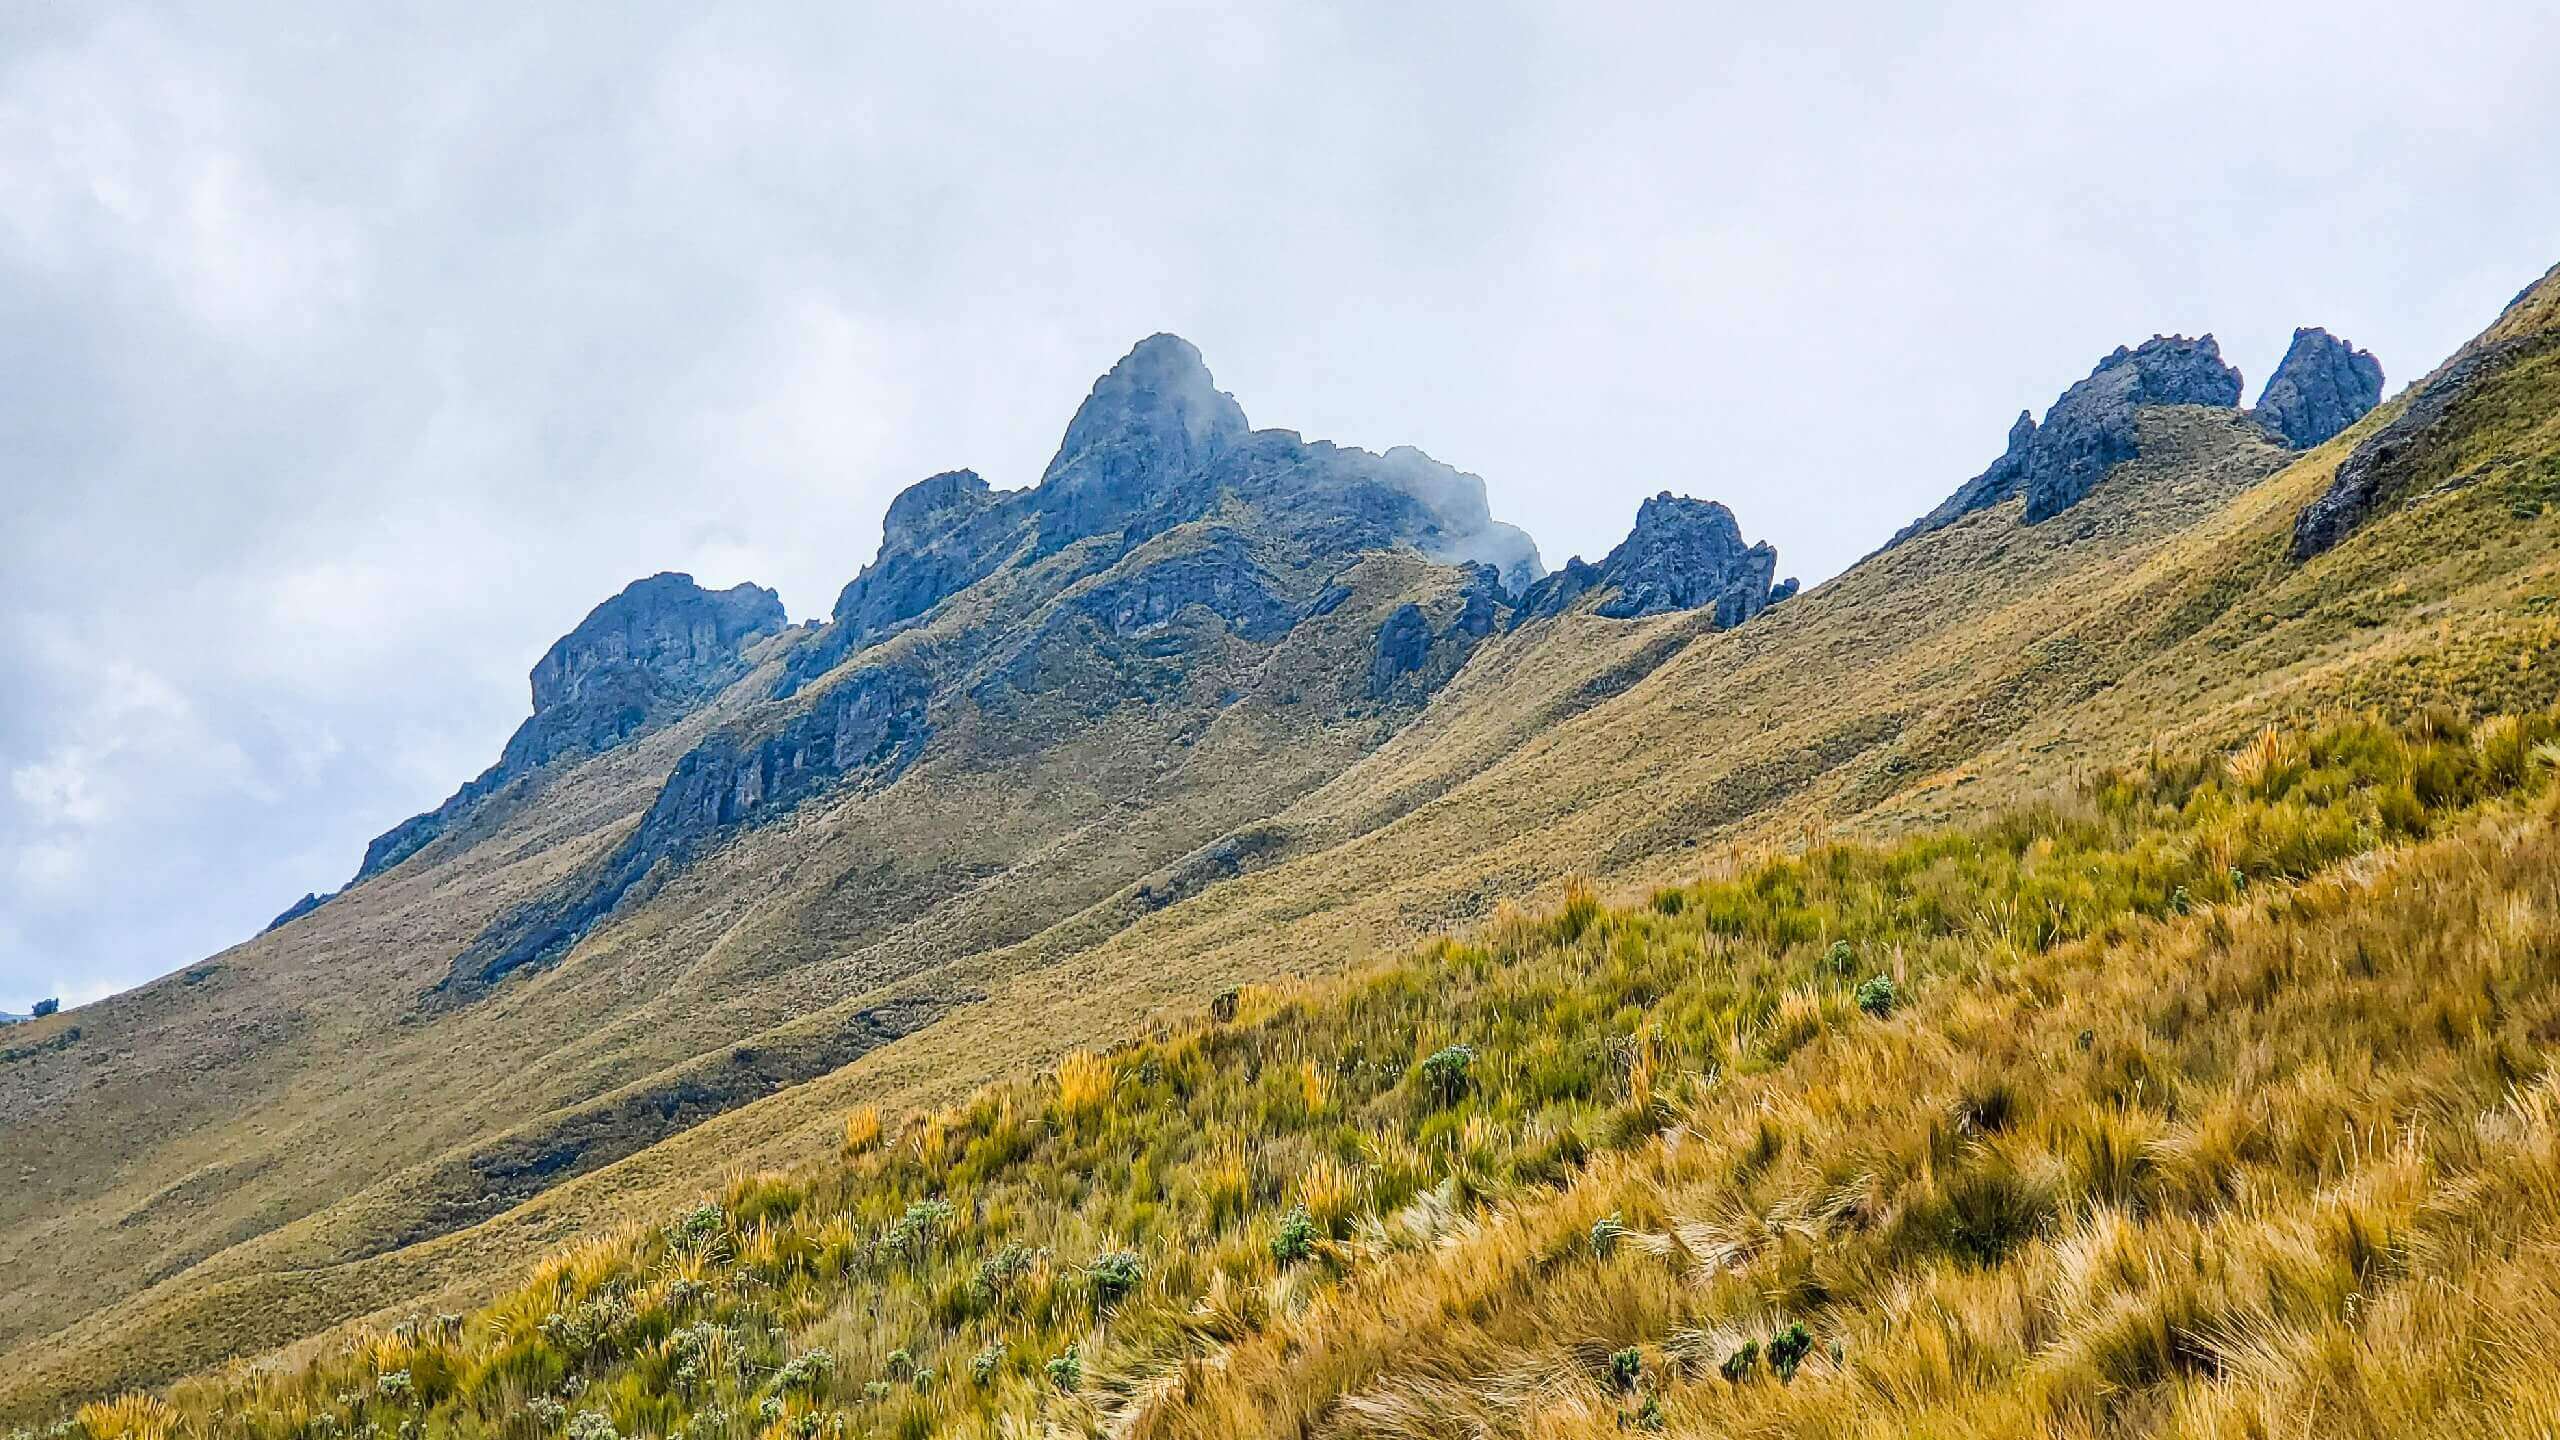 View of the summit peaks, while Climbing Cerro Puntas in Ecuador